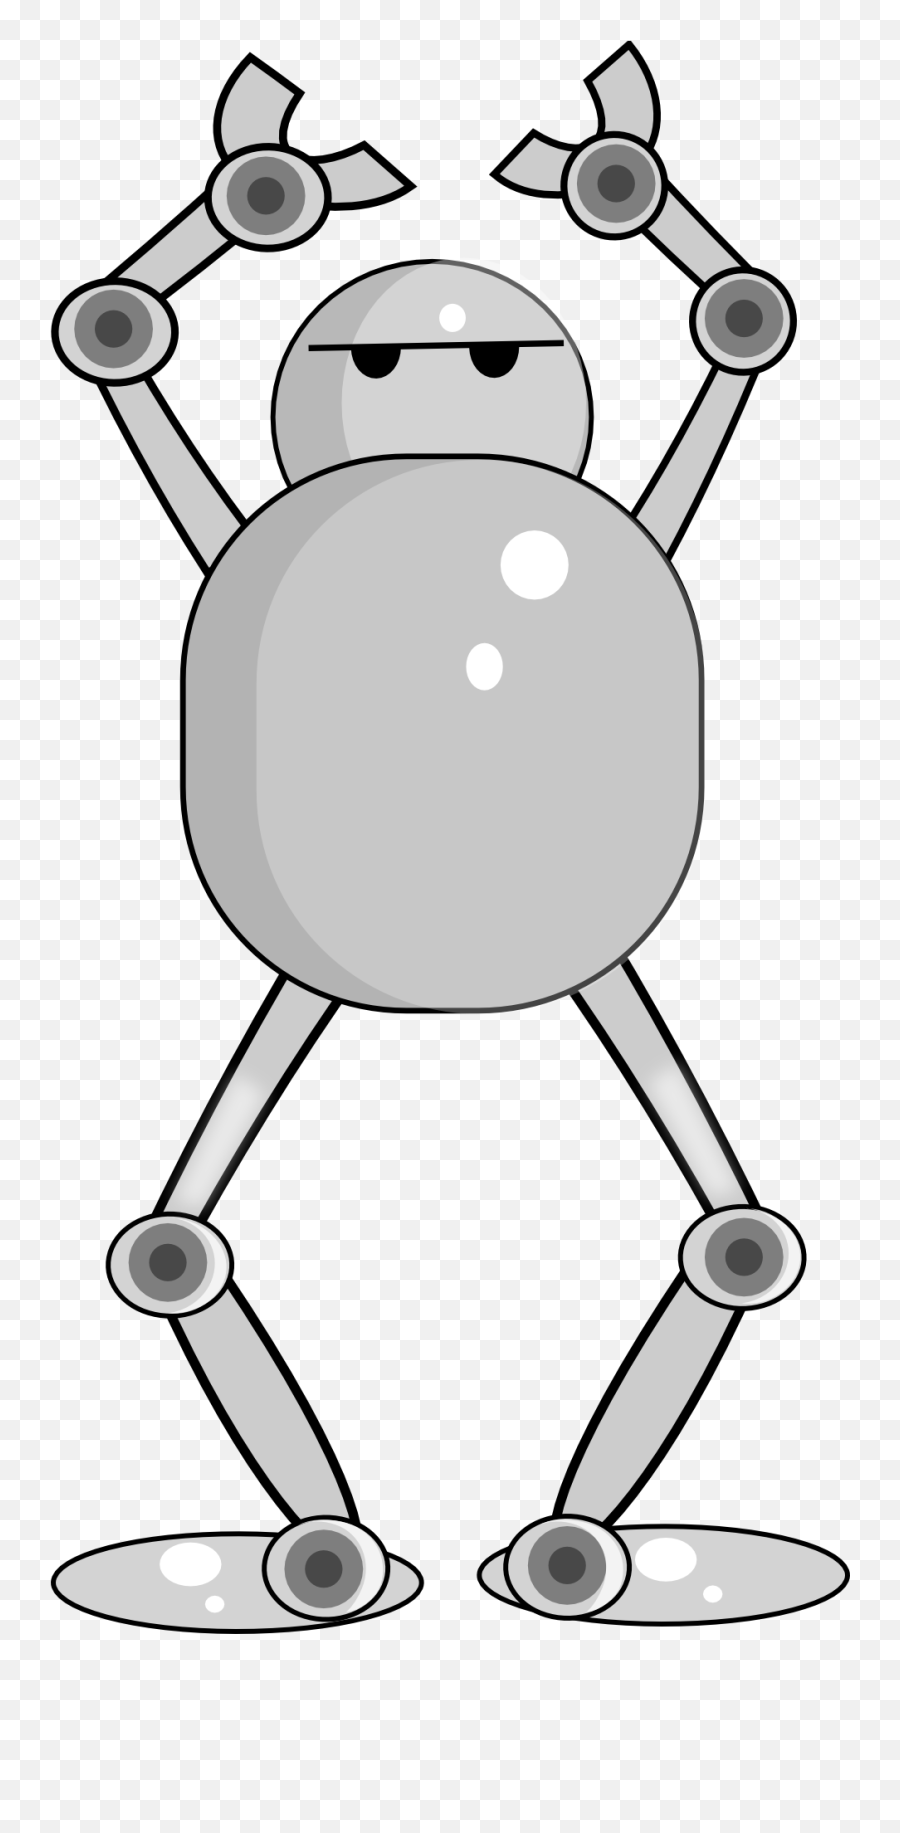 Cartoon Grey Robot Clipart Free Image - Gambar Robot Android Lucu Emoji,Robot Clipart